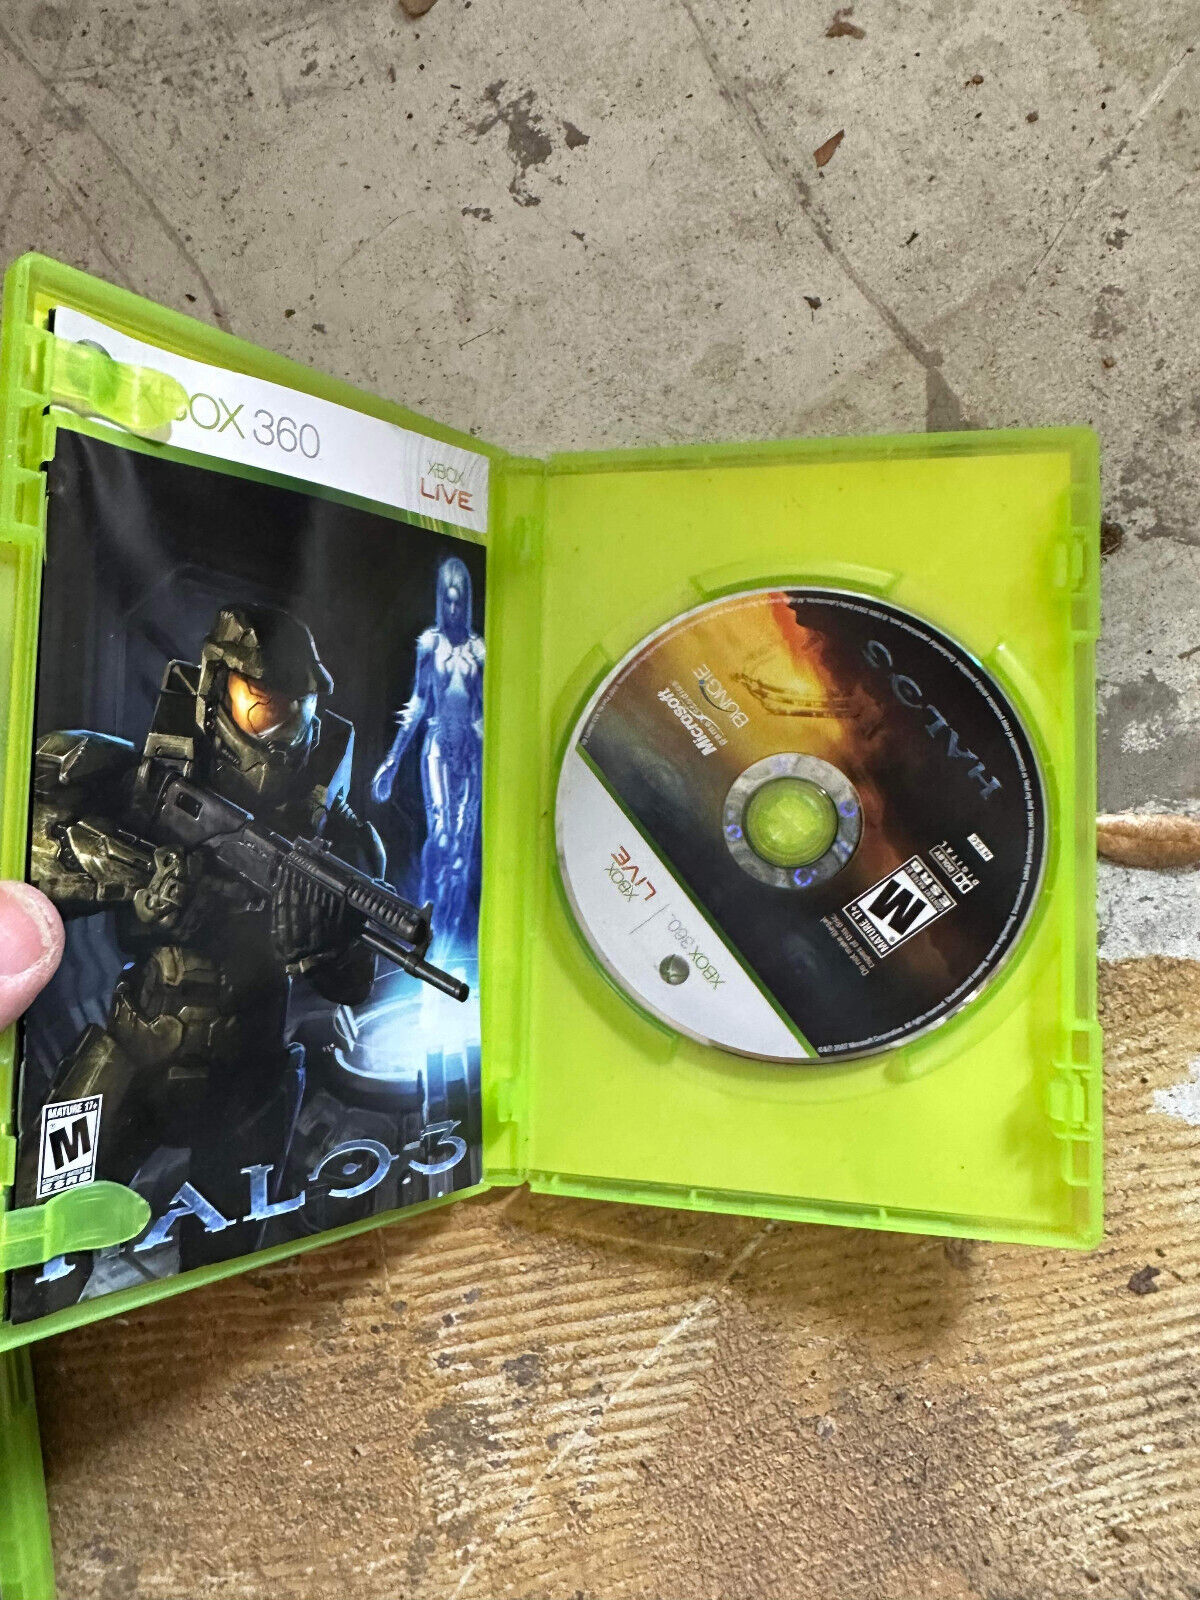 Halo 3 (Xbox 360, 2007) Complete CIB W/ Manual